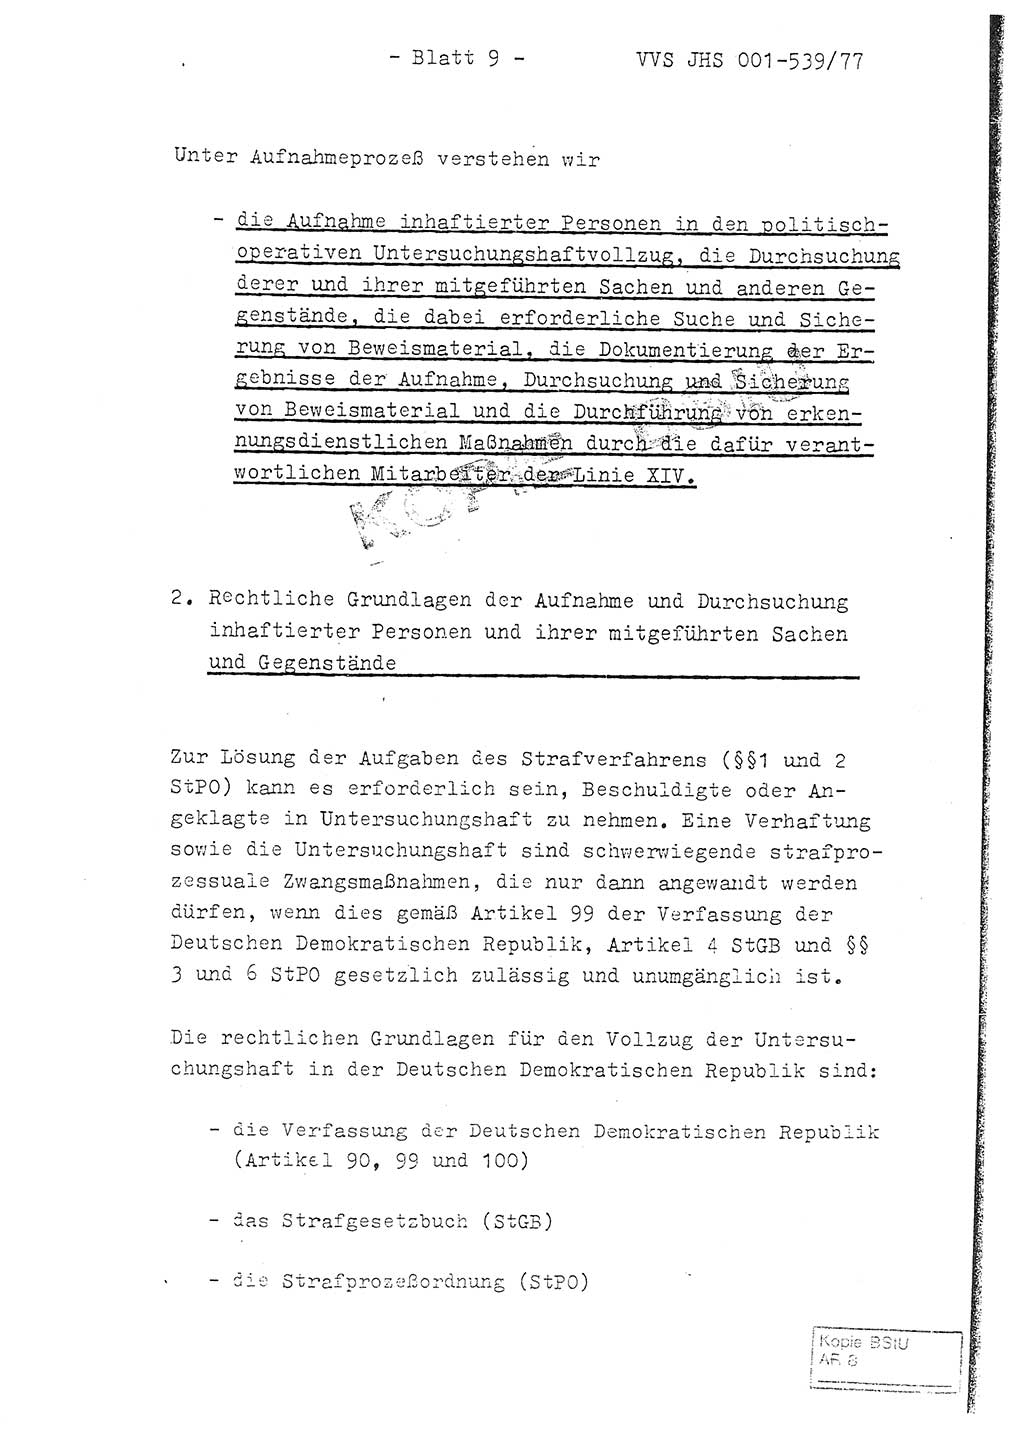 Fachschulabschlußarbeit Hauptmann Dietrich Jung (Abt. ⅩⅣ), Leutnant Klaus Klötzner (Abt. ⅩⅣ), Ministerium für Staatssicherheit (MfS) [Deutsche Demokratische Republik (DDR)], Juristische Hochschule (JHS), Vertrauliche Verschlußsache (VVS) 001-539/77, Potsdam 1978, Seite 9 (FS-Abschl.-Arb. MfS DDR JHS VVS 001-539/77 1978, S. 9)